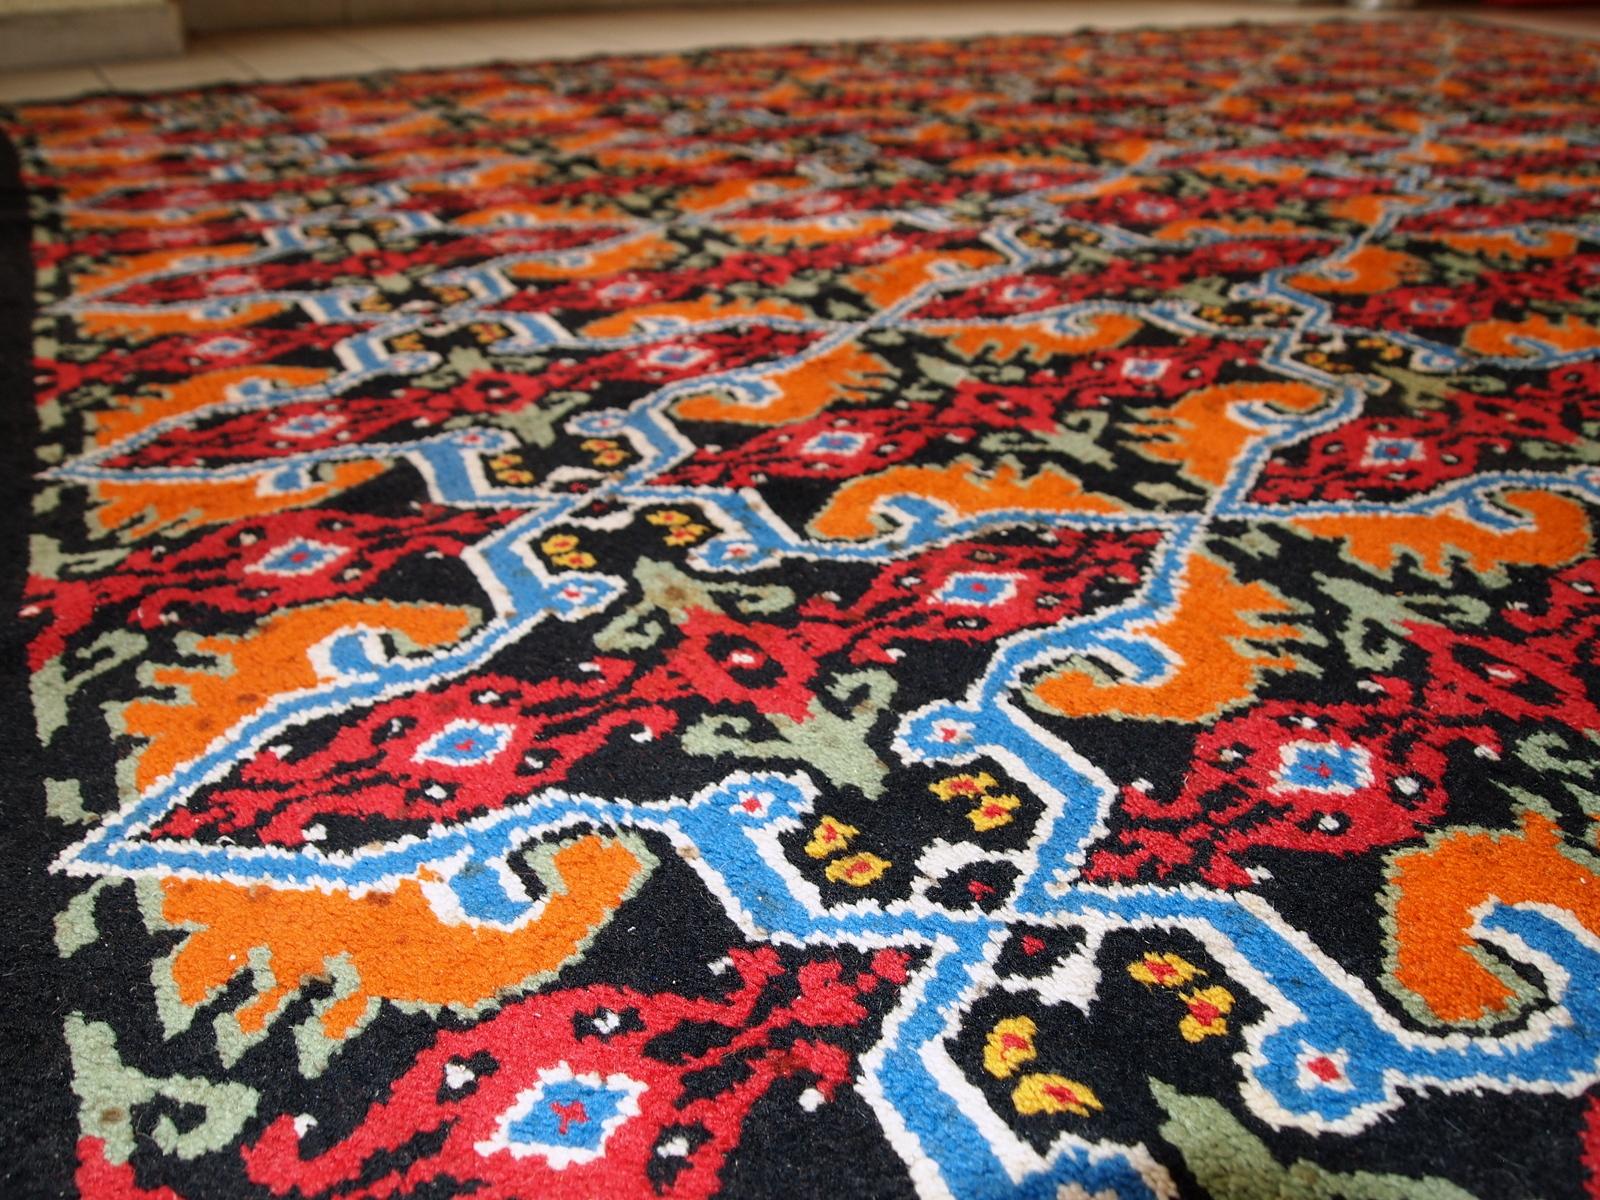 Marokkanischer Vintage-Teppich in gutem Originalzustand. Der Teppich wurde Ende des 20. Jahrhunderts in geometrischem Design hergestellt.

-Zustand: original gut,

-Ungefähr: 1970er Jahre,

-Größe: 6' x 9.8' (185cm x 300cm),

-Material: